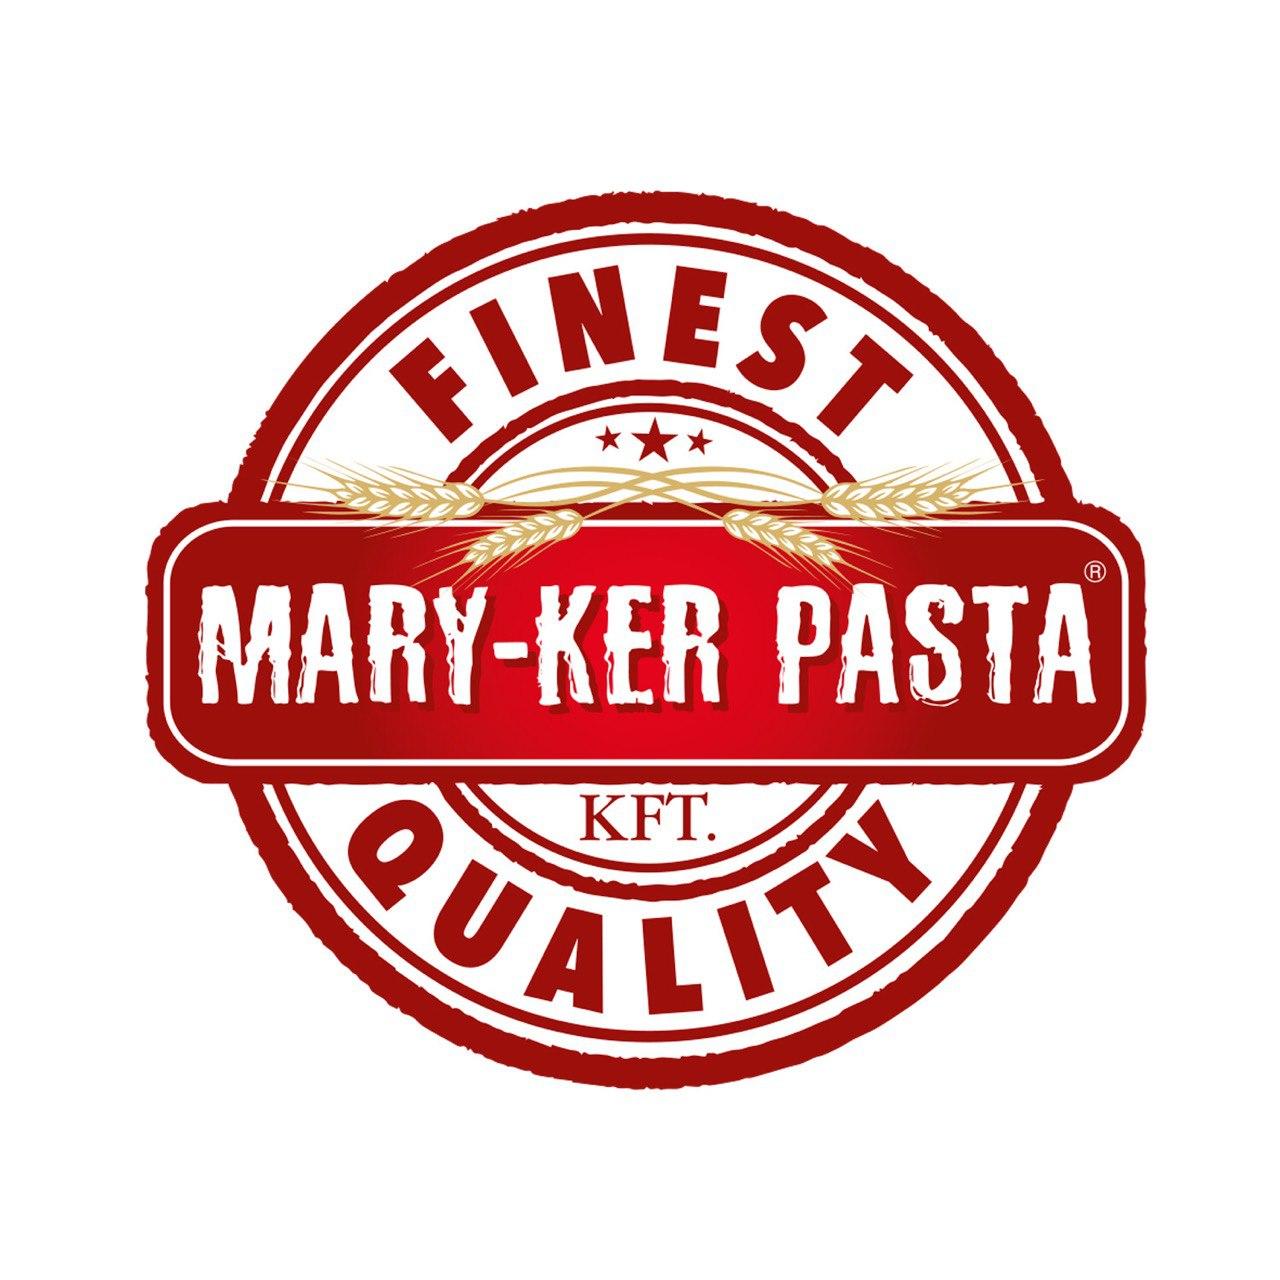 Mary-ker Pasta logo